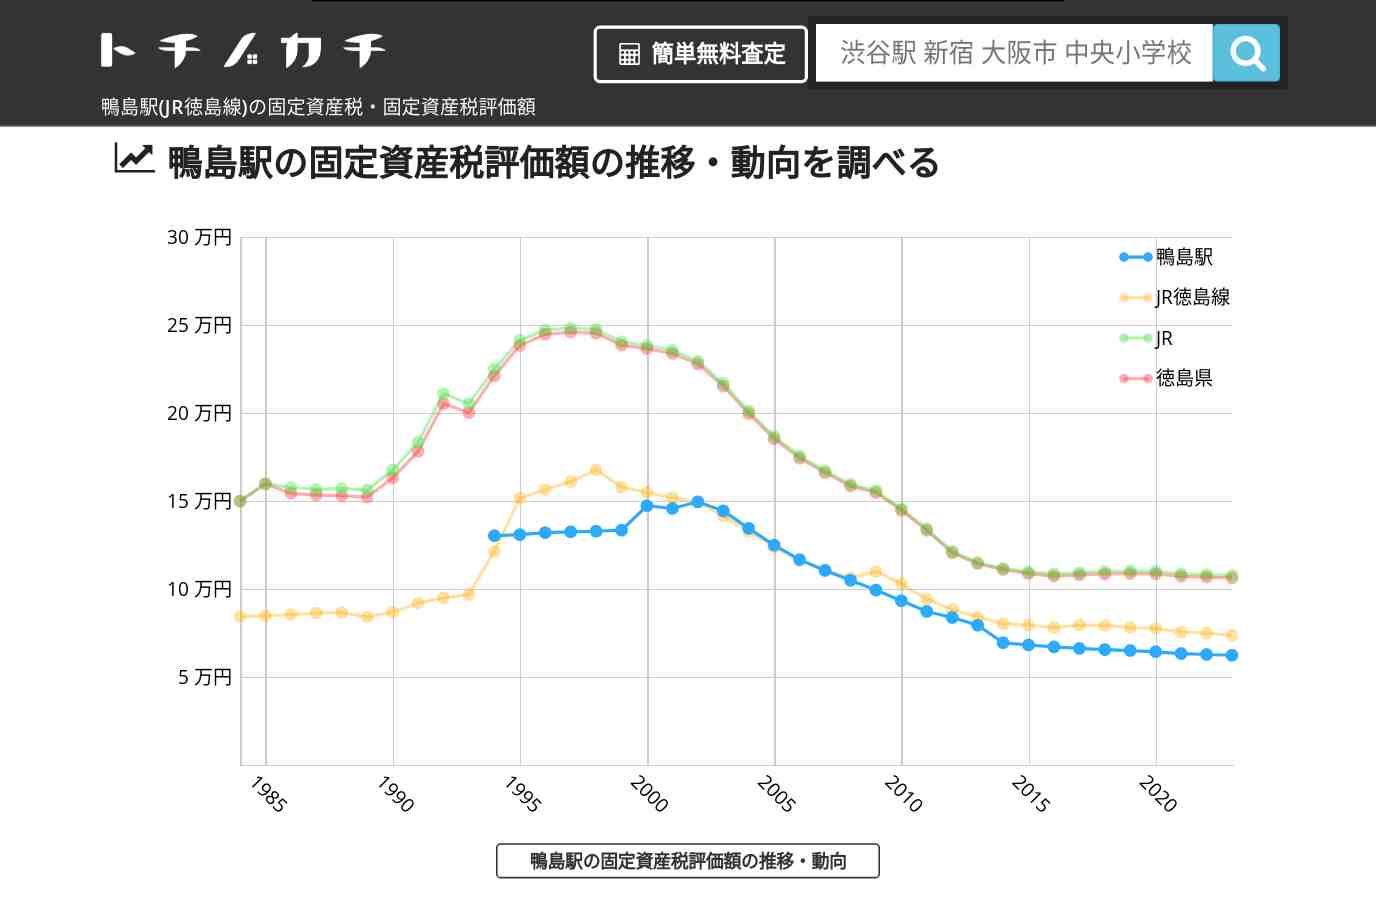 鴨島駅(JR徳島線)の固定資産税・固定資産税評価額 | トチノカチ